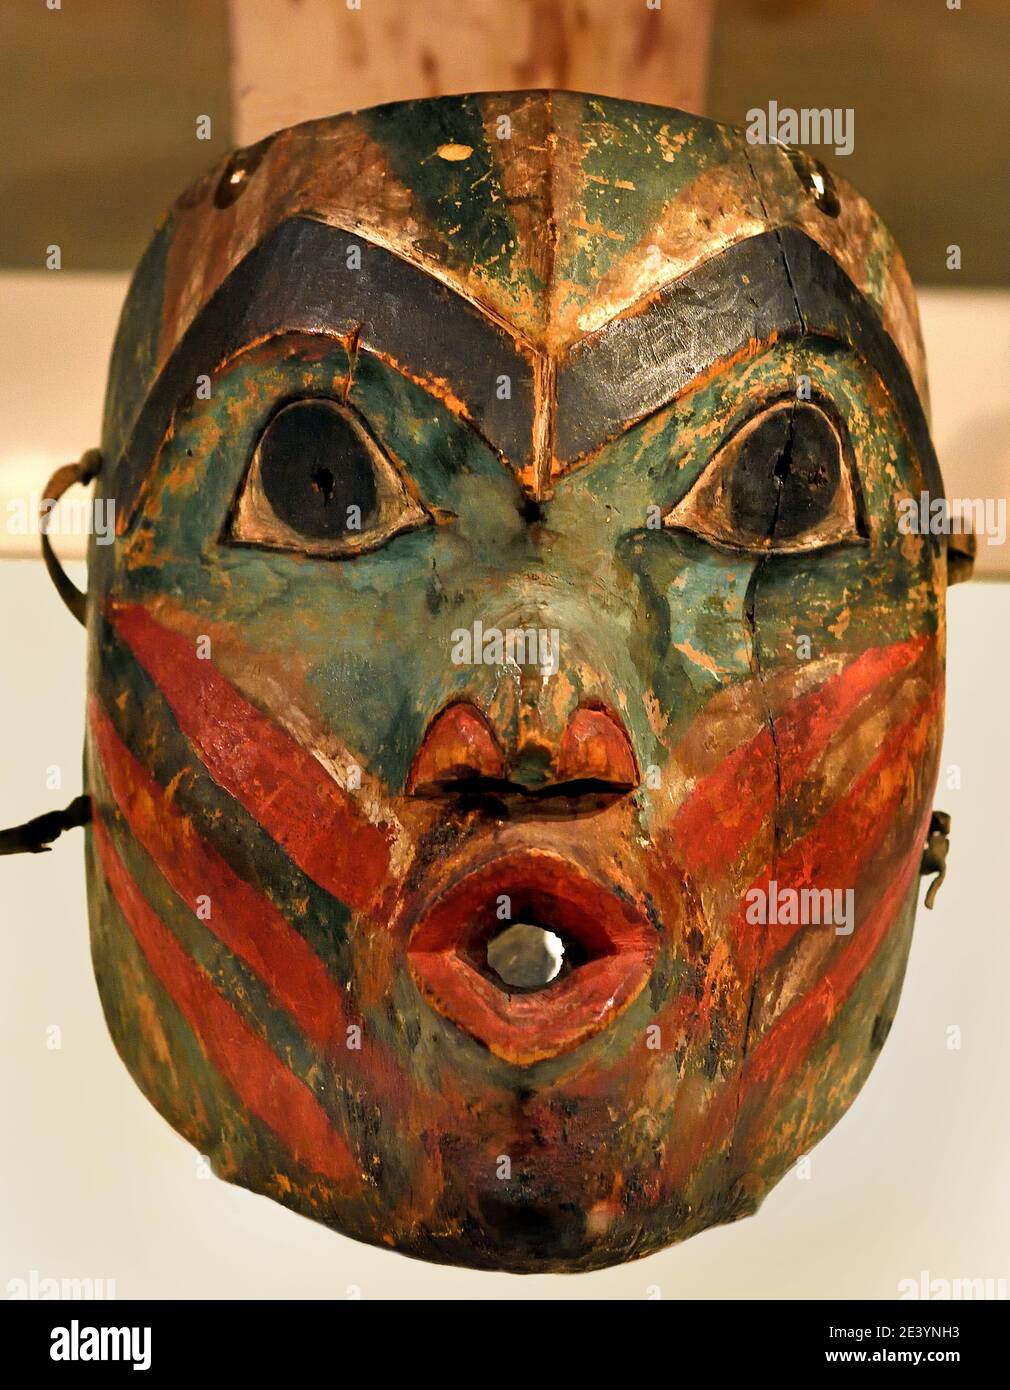 Masque 1800-1850 Culture Tlingit, Canada, canadien, américain, États-Unis d'Amérique, AMÉRIQUE, États-UNIS CÔTE DU NORD-OUEST, ALASKA Banque D'Images